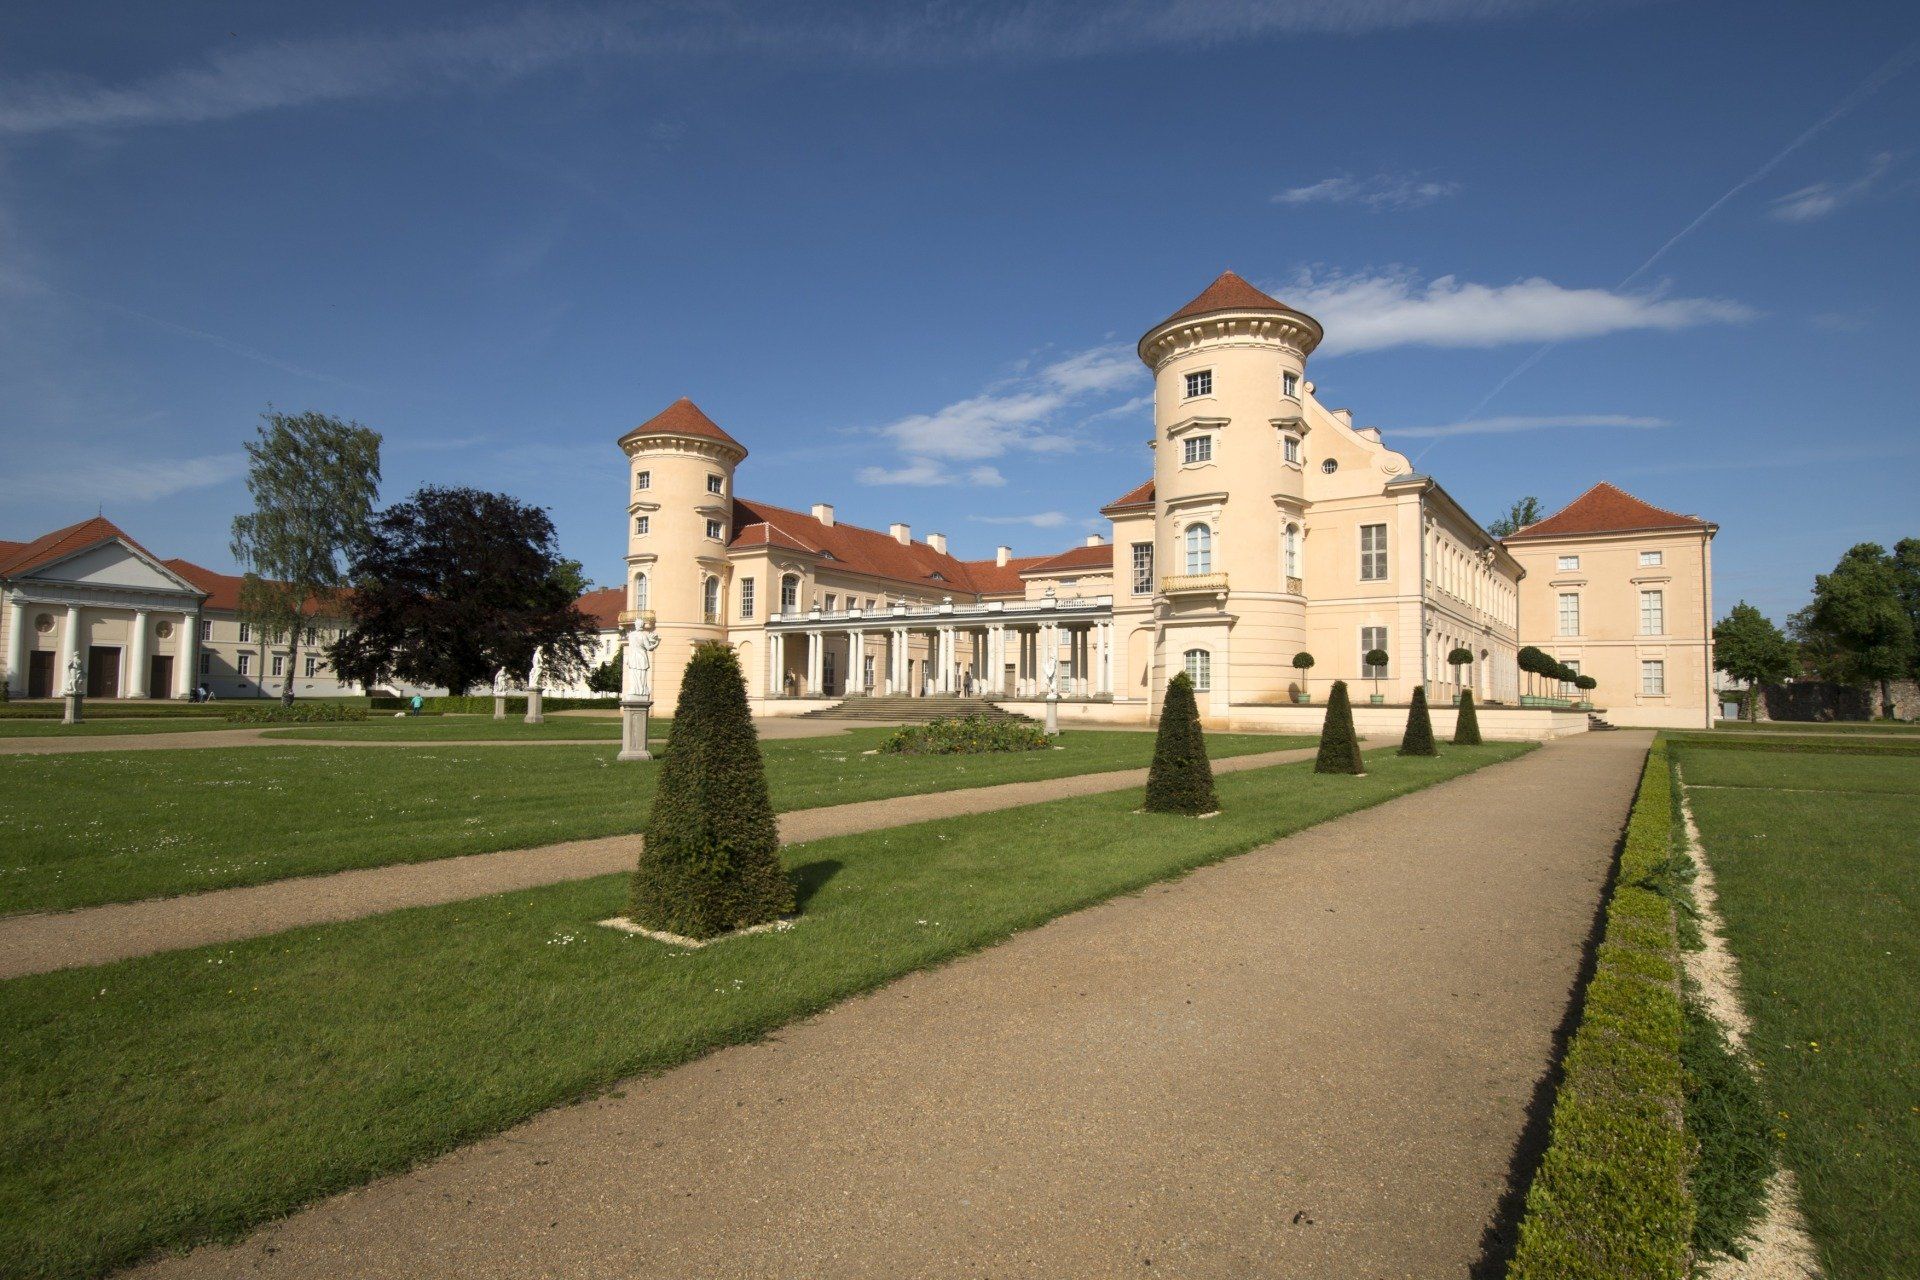 Schloss Rheinsberg, Brandenburg, Germany